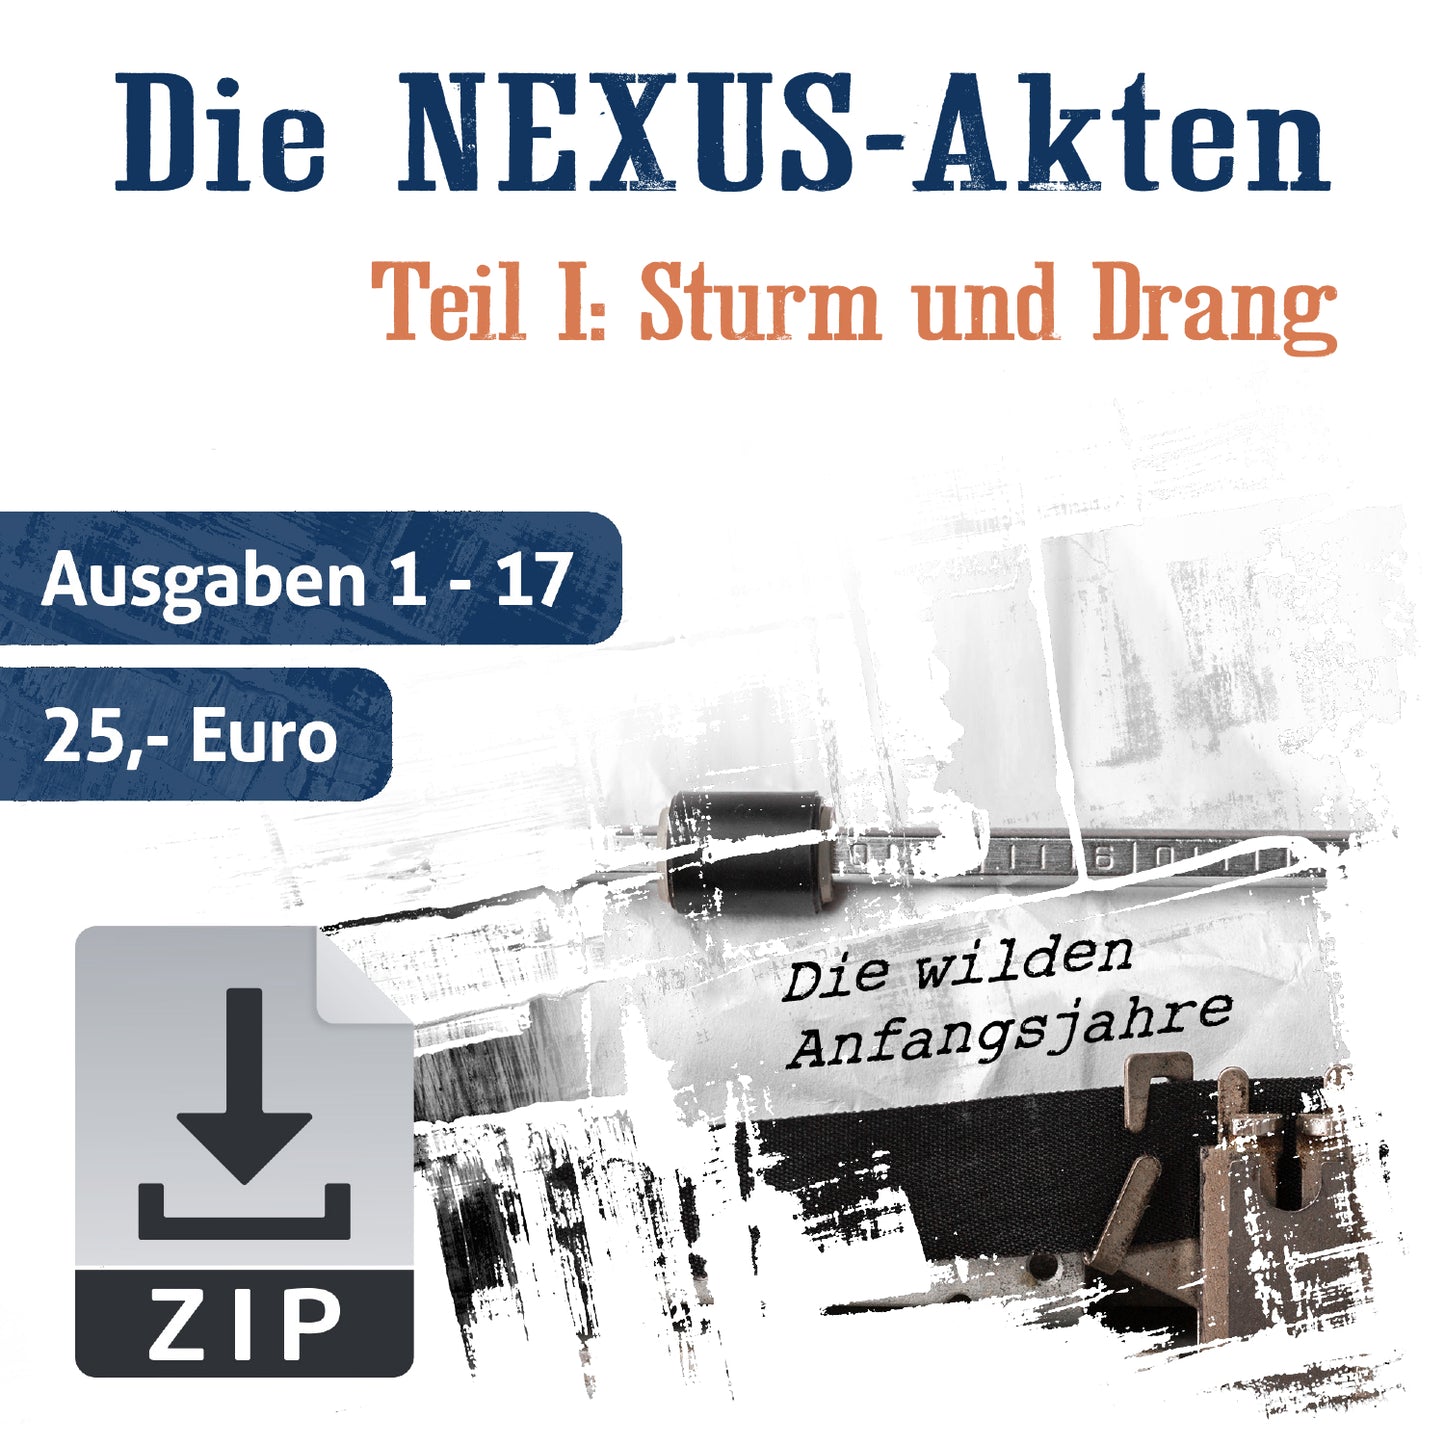 NEXUS-Akte 1: Sturm und Drang (Hefte 1-17)